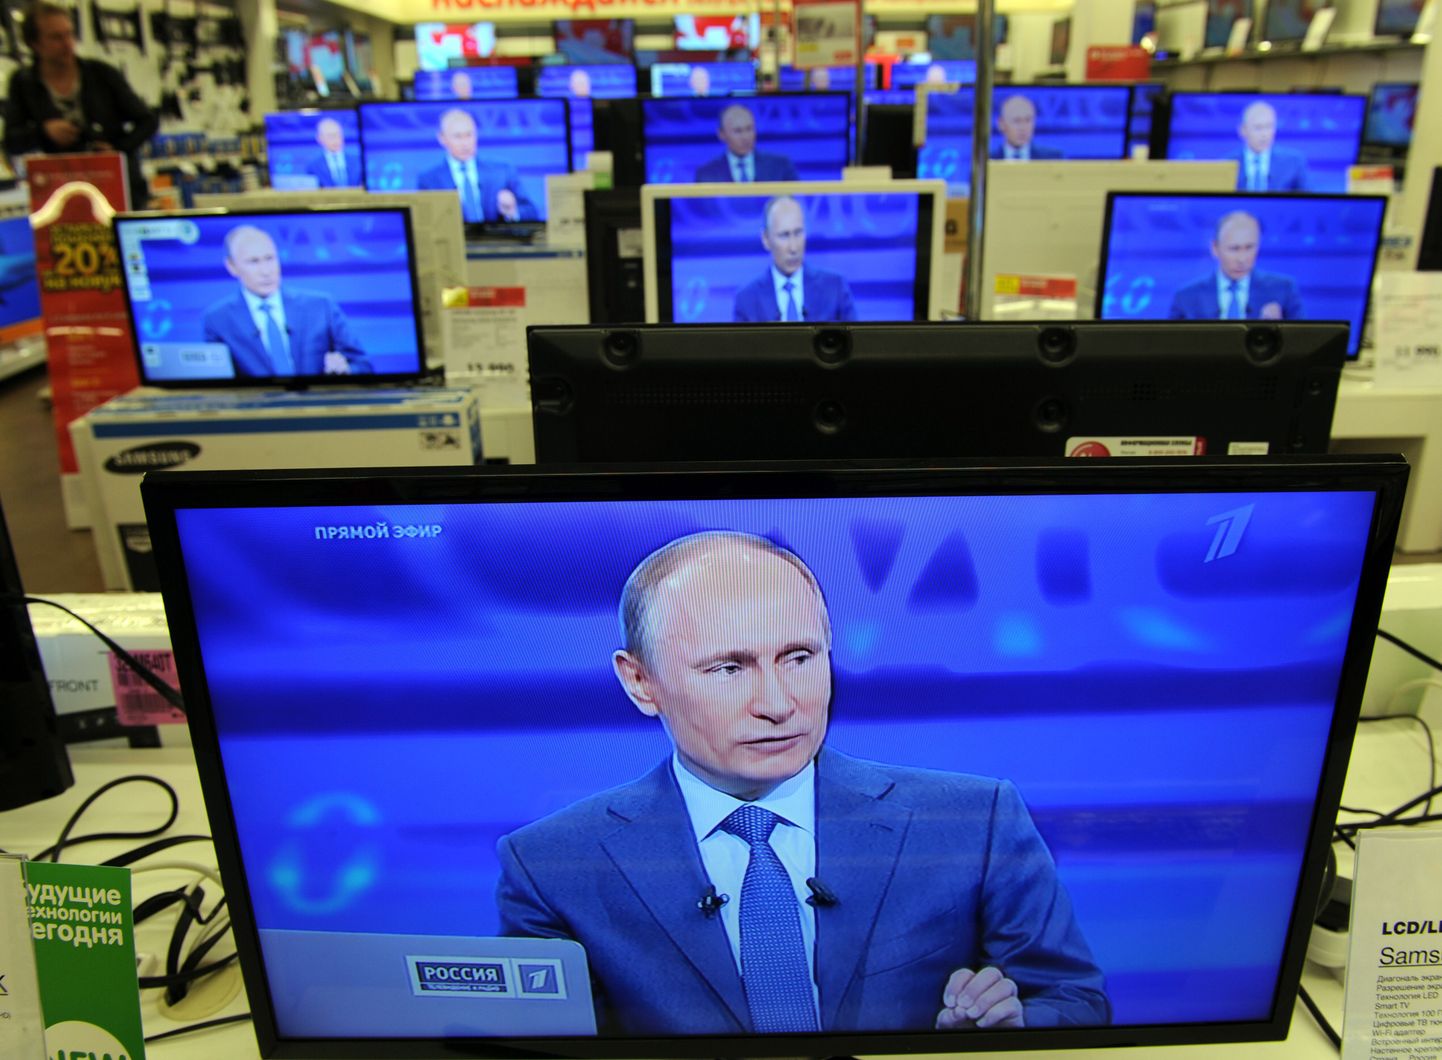 Venemaa presidendi otse-eeteri ülekanne täna Moskva elektroonikakaupluses.